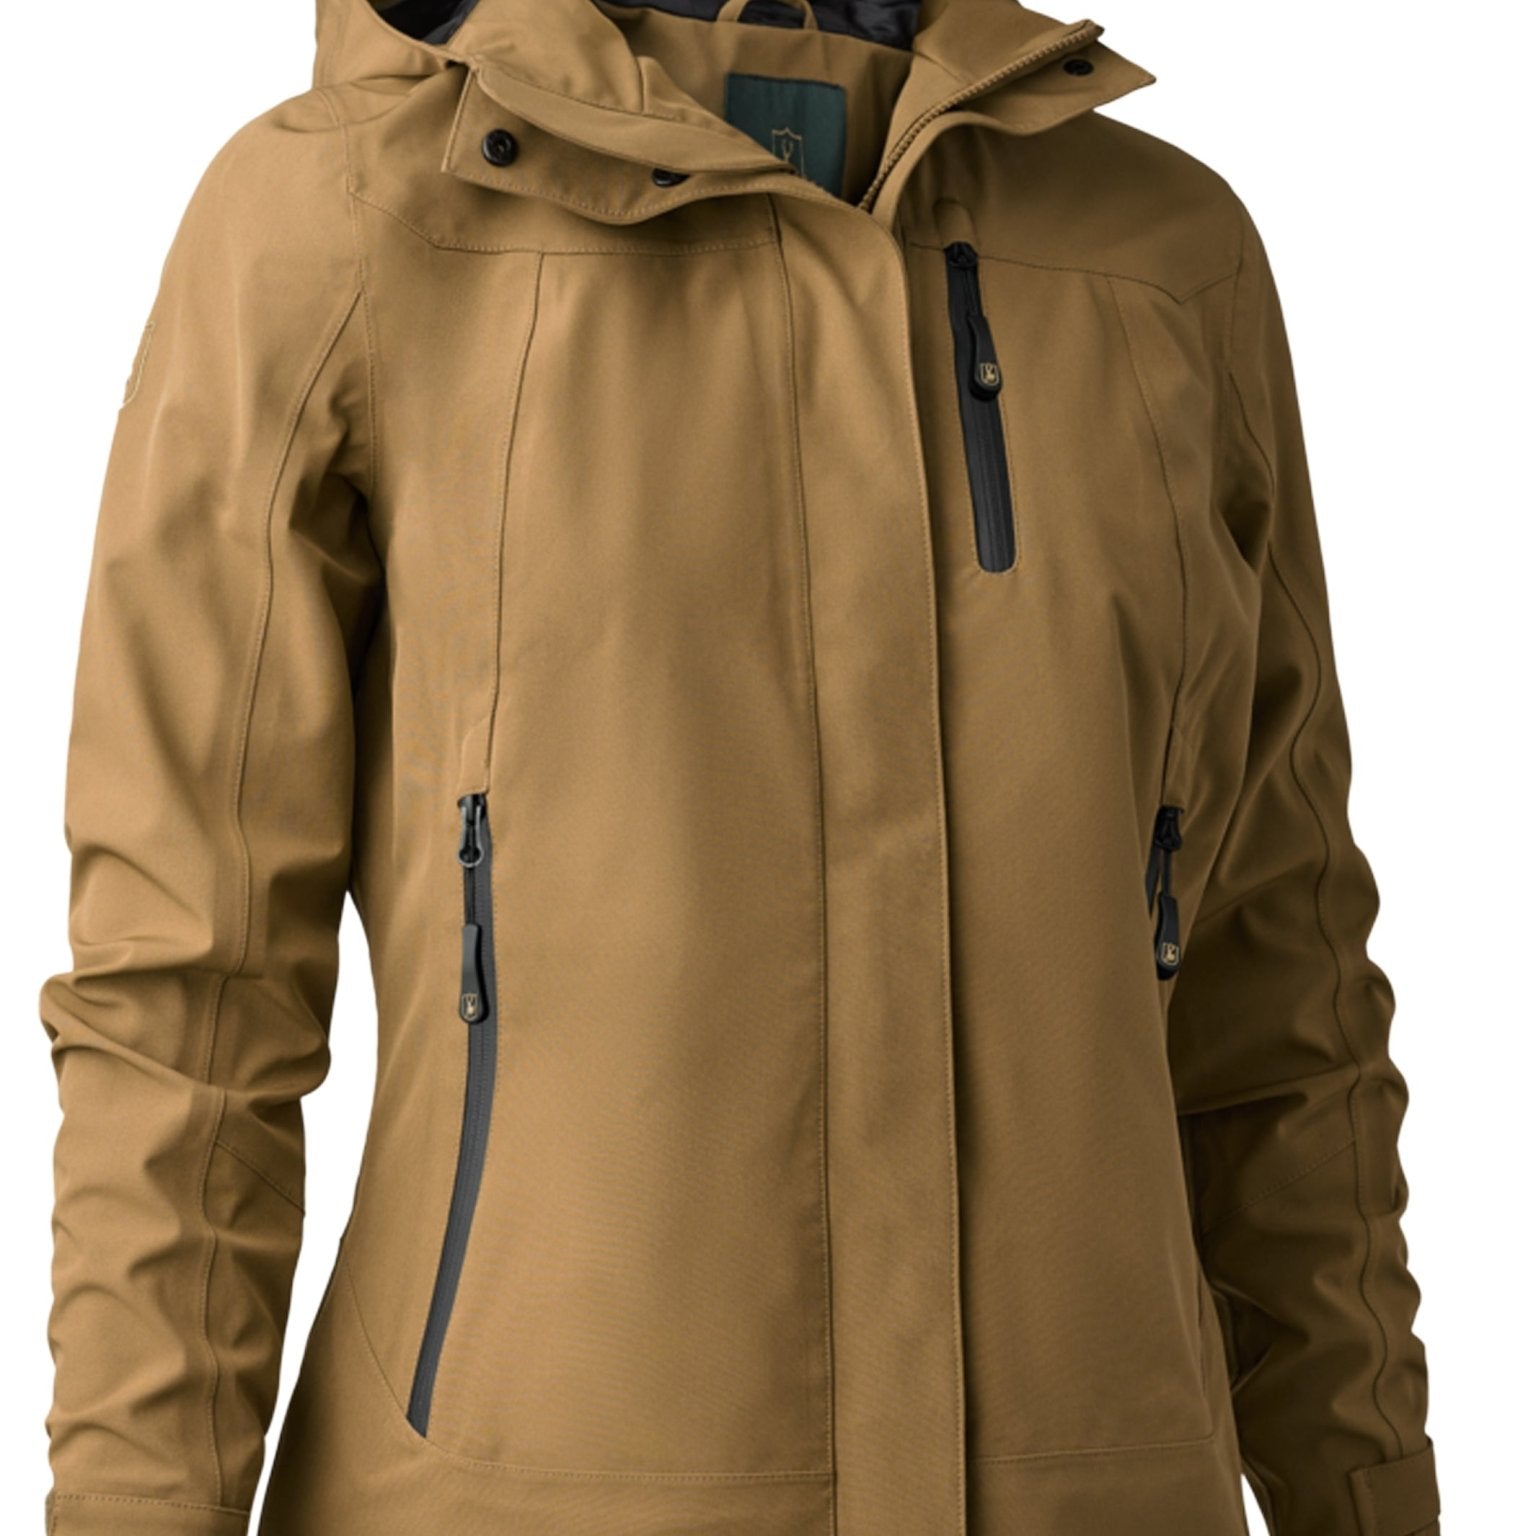 4elementsclothingDeerhunterDeerhunter - Sarek Ladies Waterproof & Windproof Jacket with Taped Seams, breathable, 4 way StretchOuterwear5353-347-36